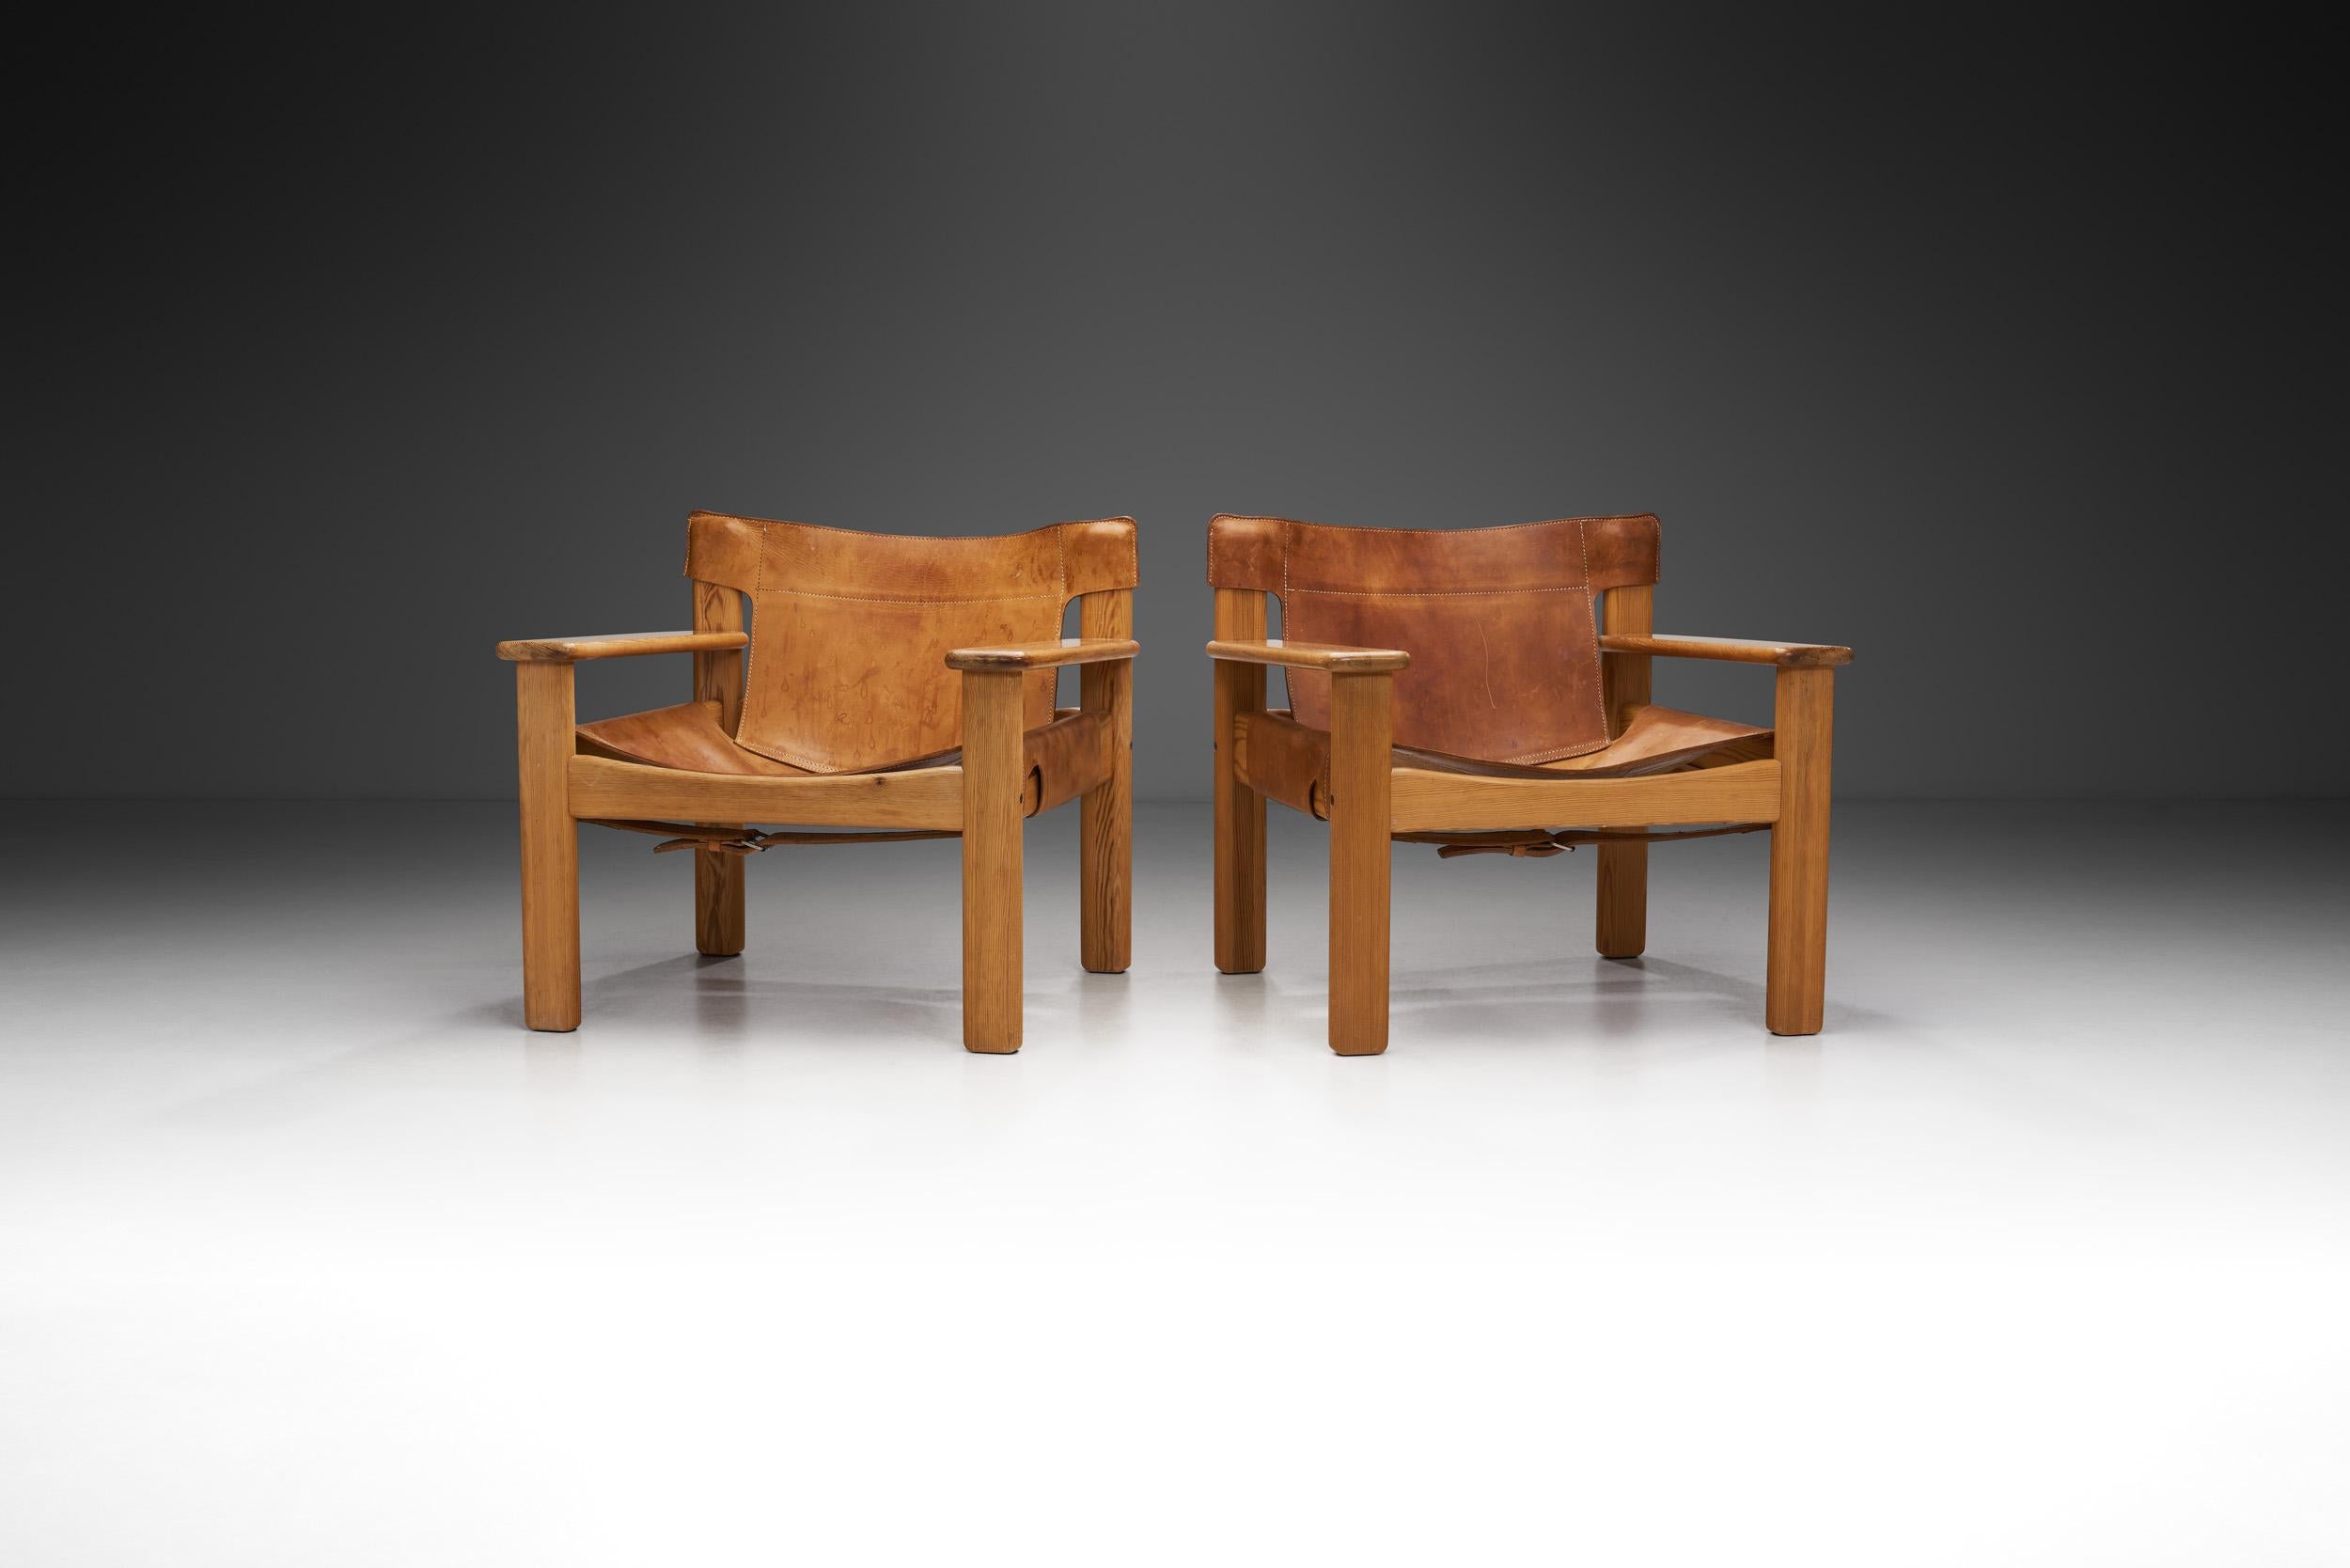 Die Natura-Sessel von Karin Mobring gehören zu den wirklich historischen Entwürfen, die als ikonische Beispiele für zeitloses Design gelten und das kreative Genie der schwedischen Designerin Karin Mobring widerspiegeln, die bis heute für ihre